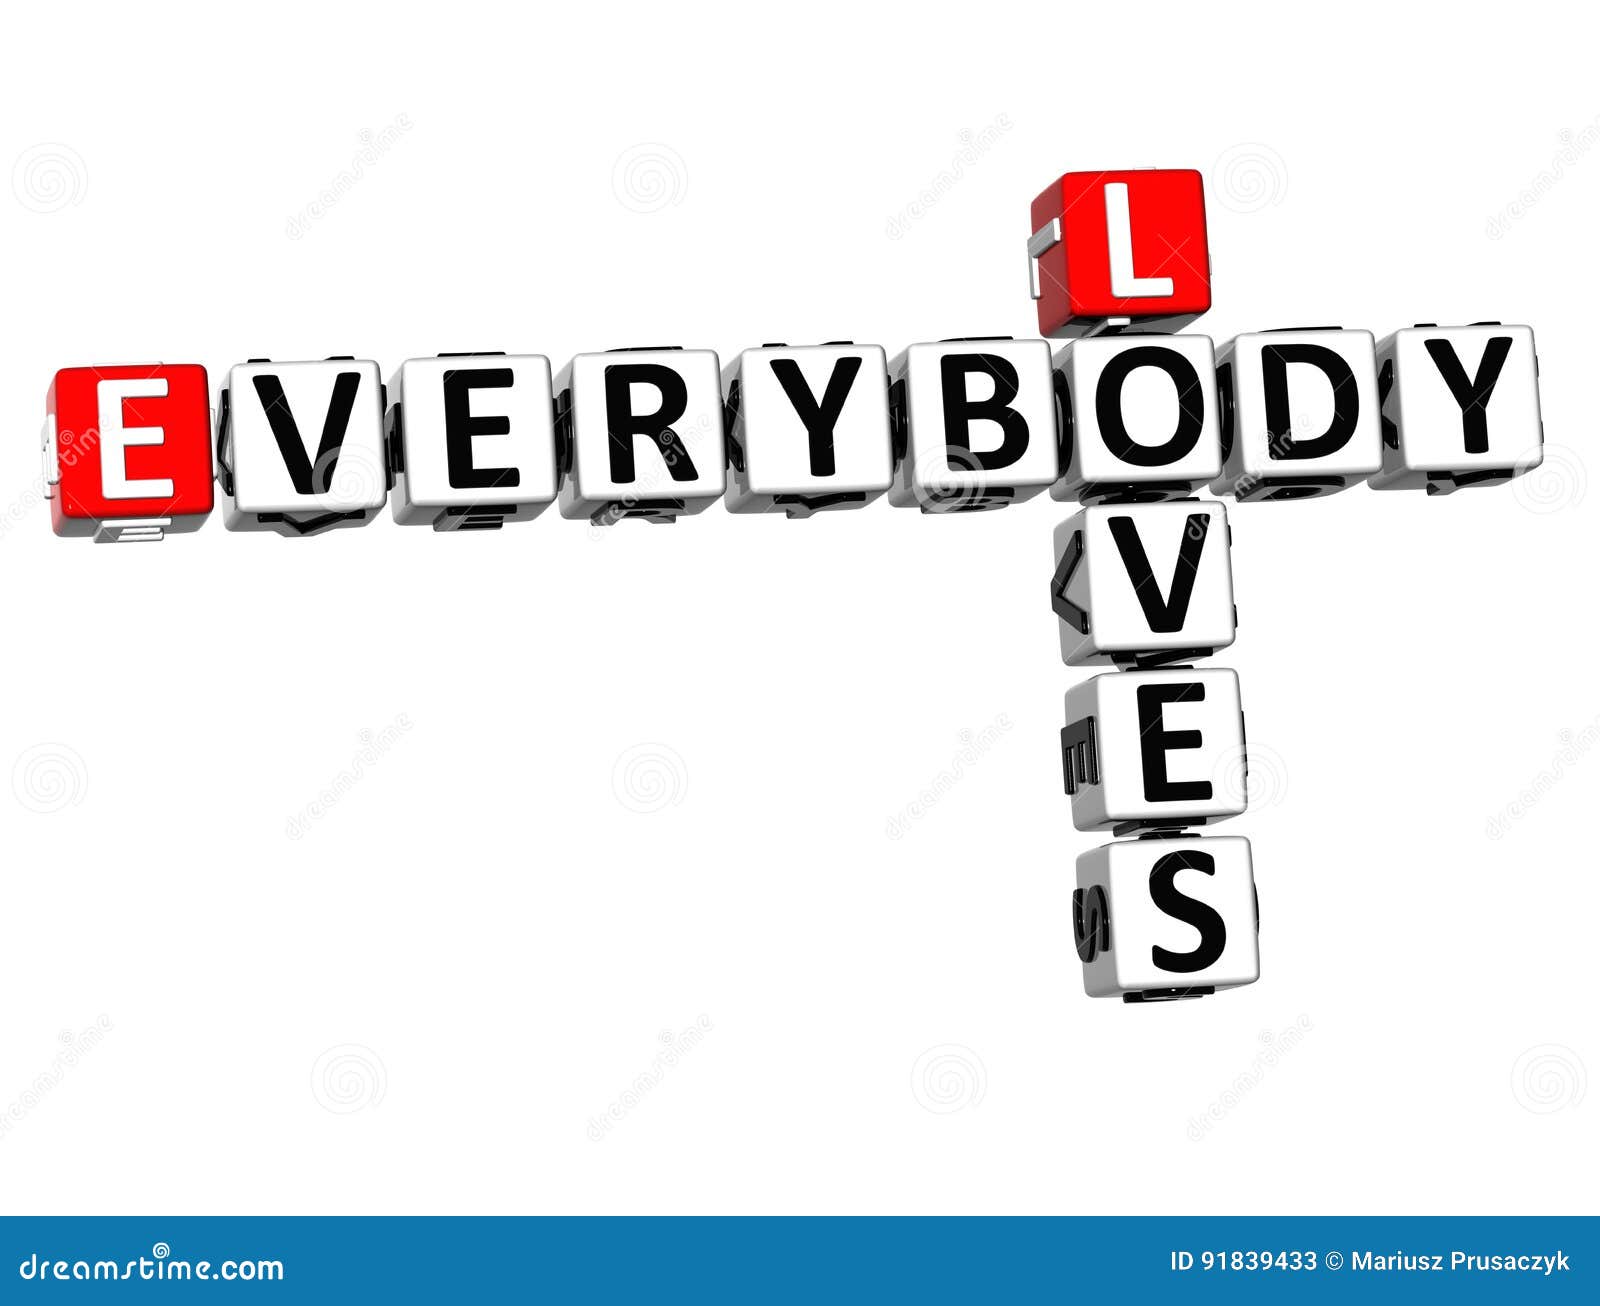 3d loves everybody crossword